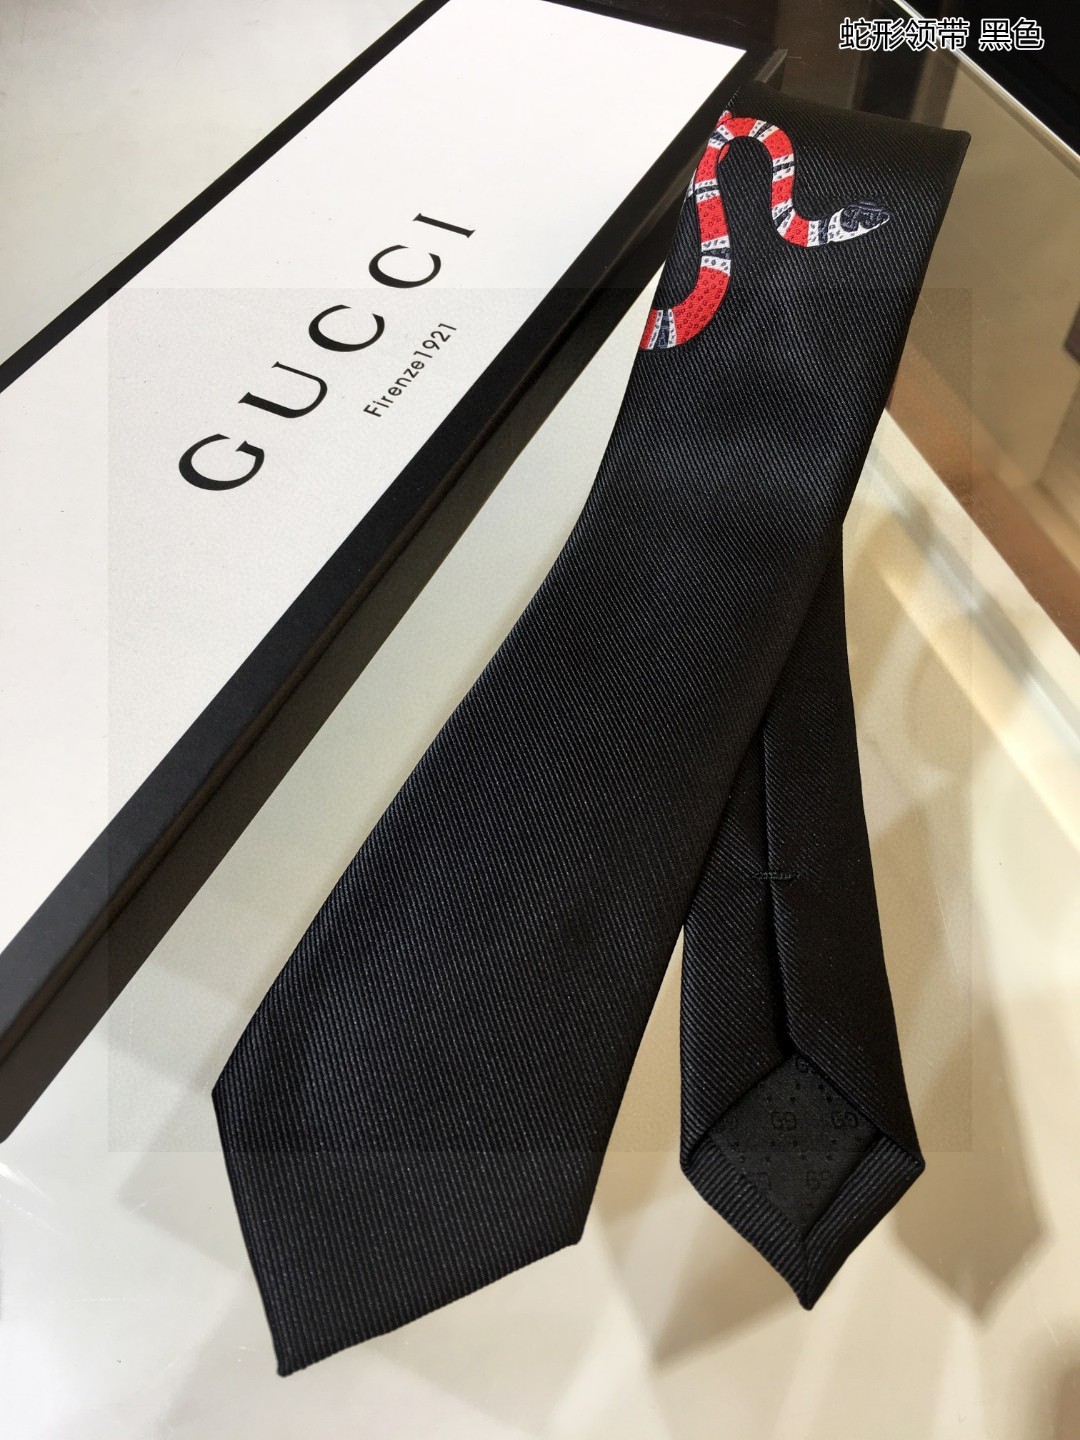 特价G家男士领带系列蛇形领带稀有采用经典主题动物绣花展现精湛手工与时尚优雅的理想选择这款领带将标志性完美